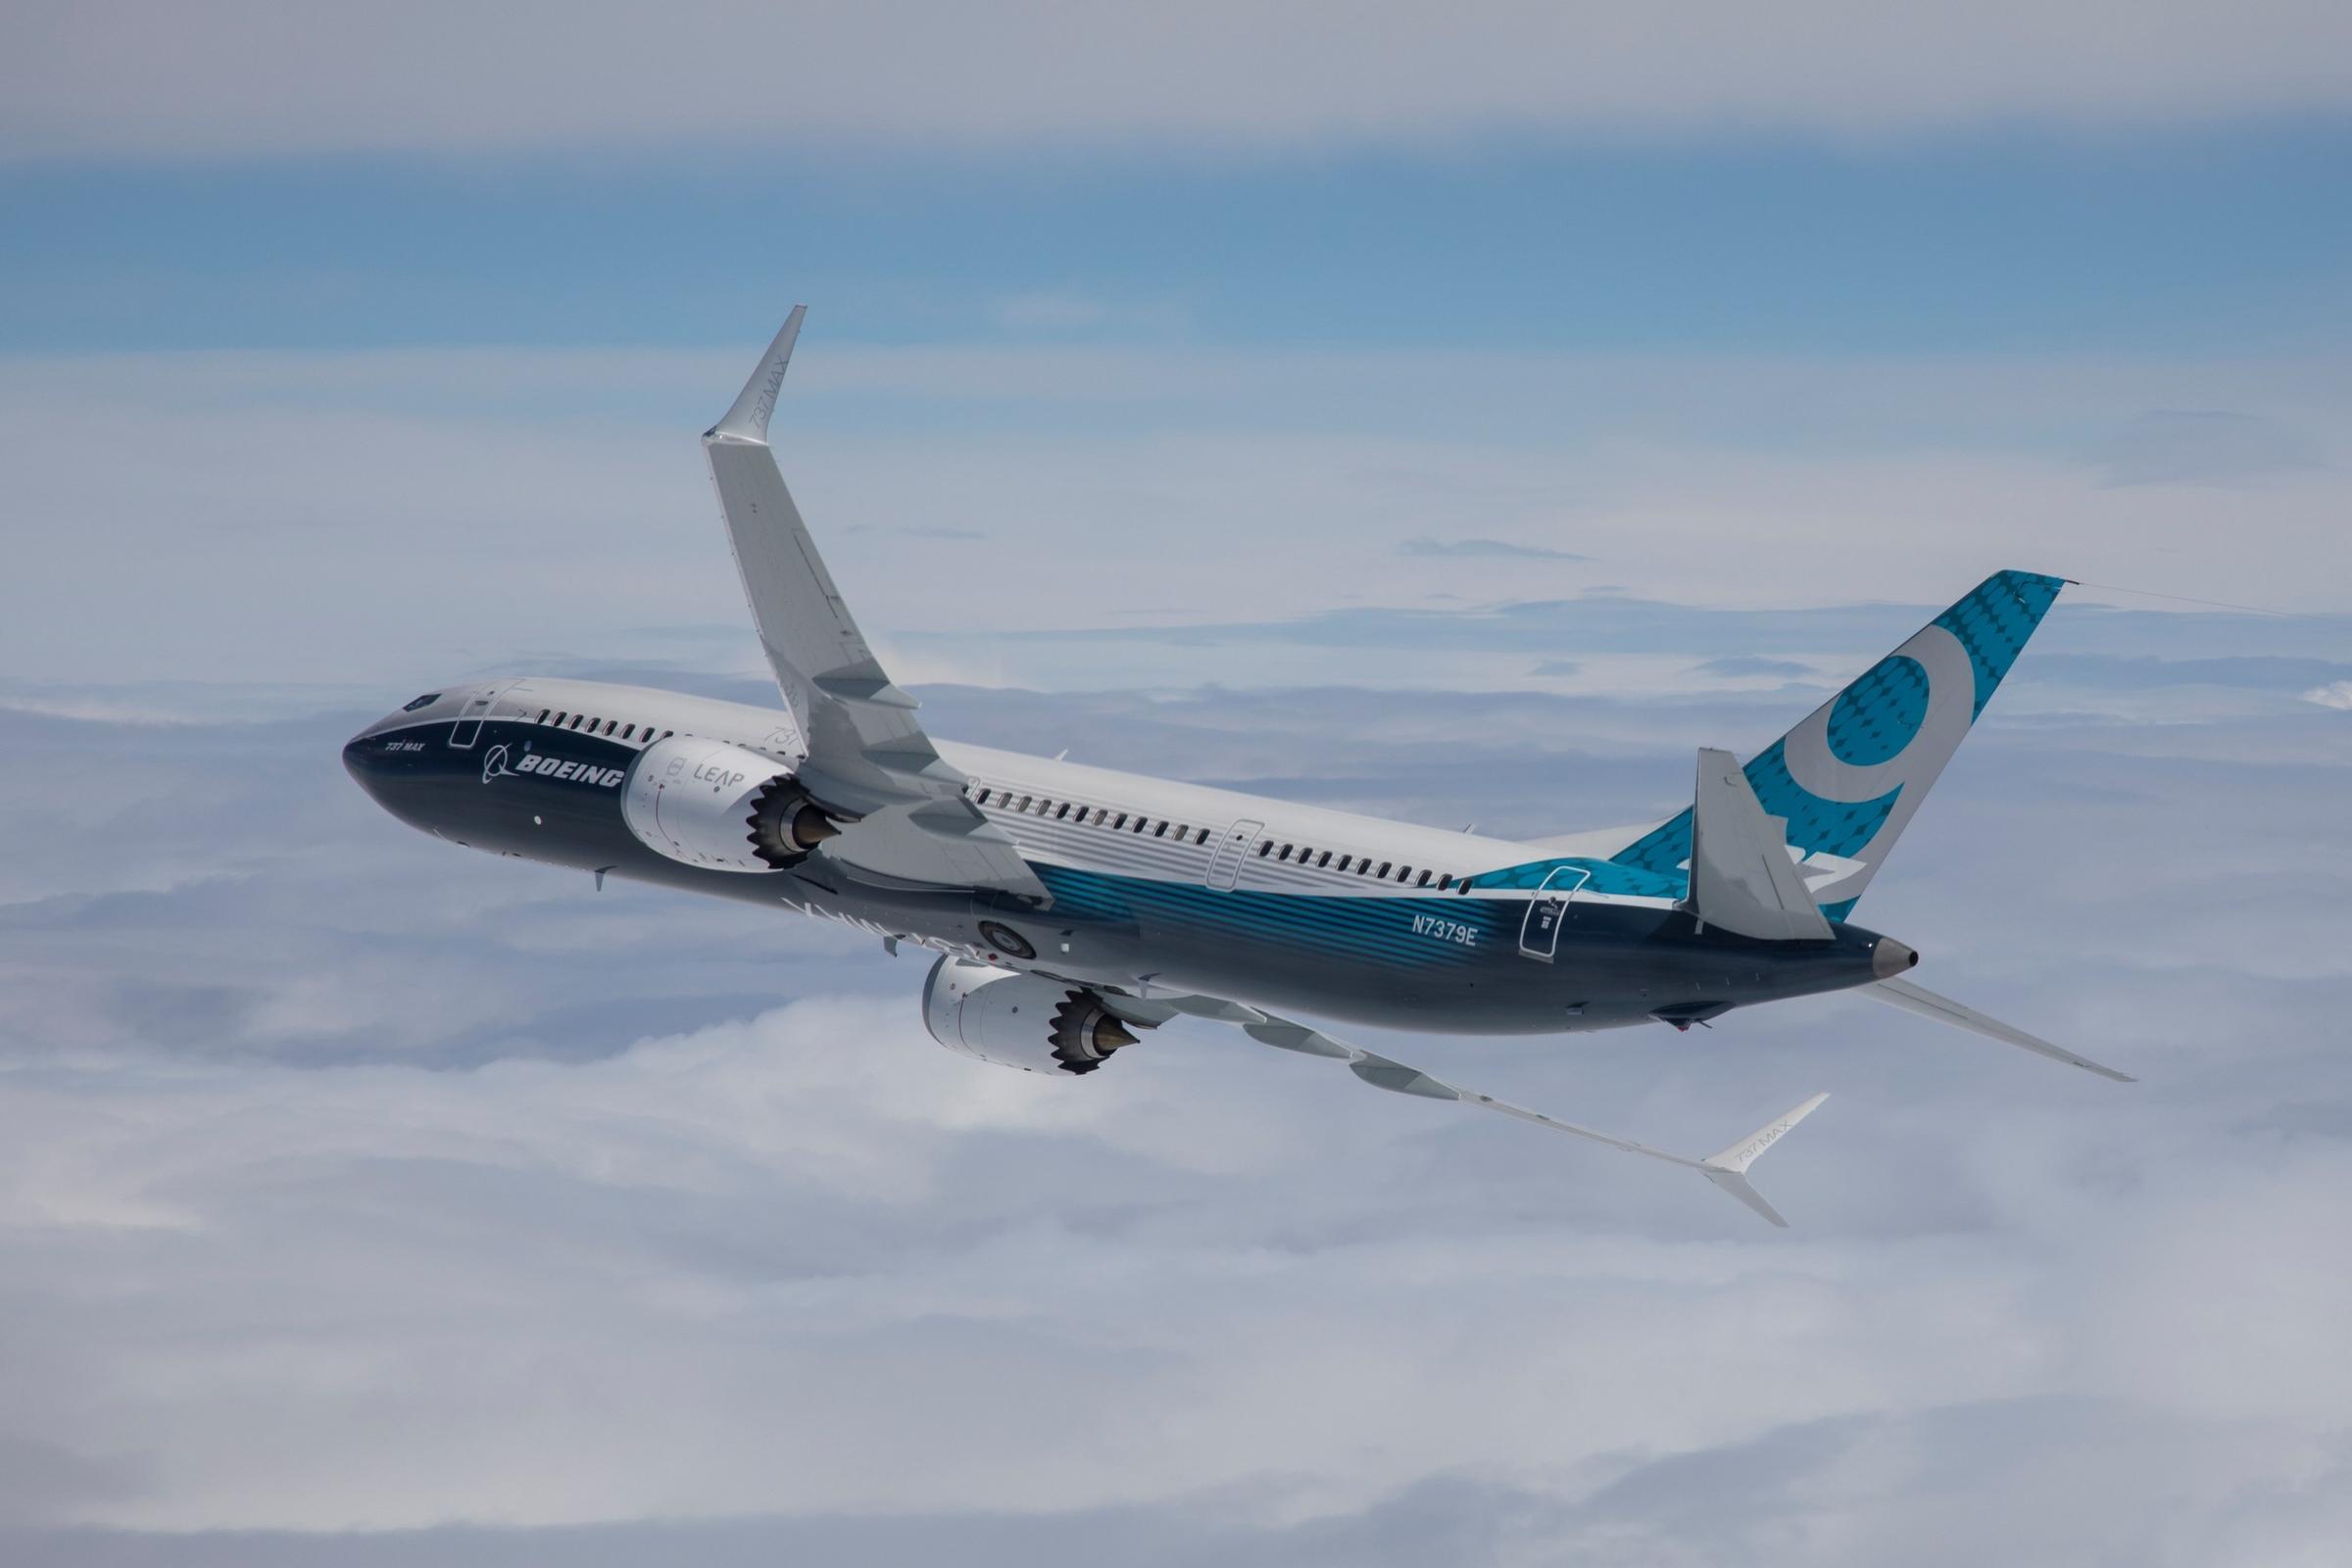 Alaska Airlines has 32 Boeing 737 MAX jets on order. CREDIT: PAUL WEATHERMAN/BOEING